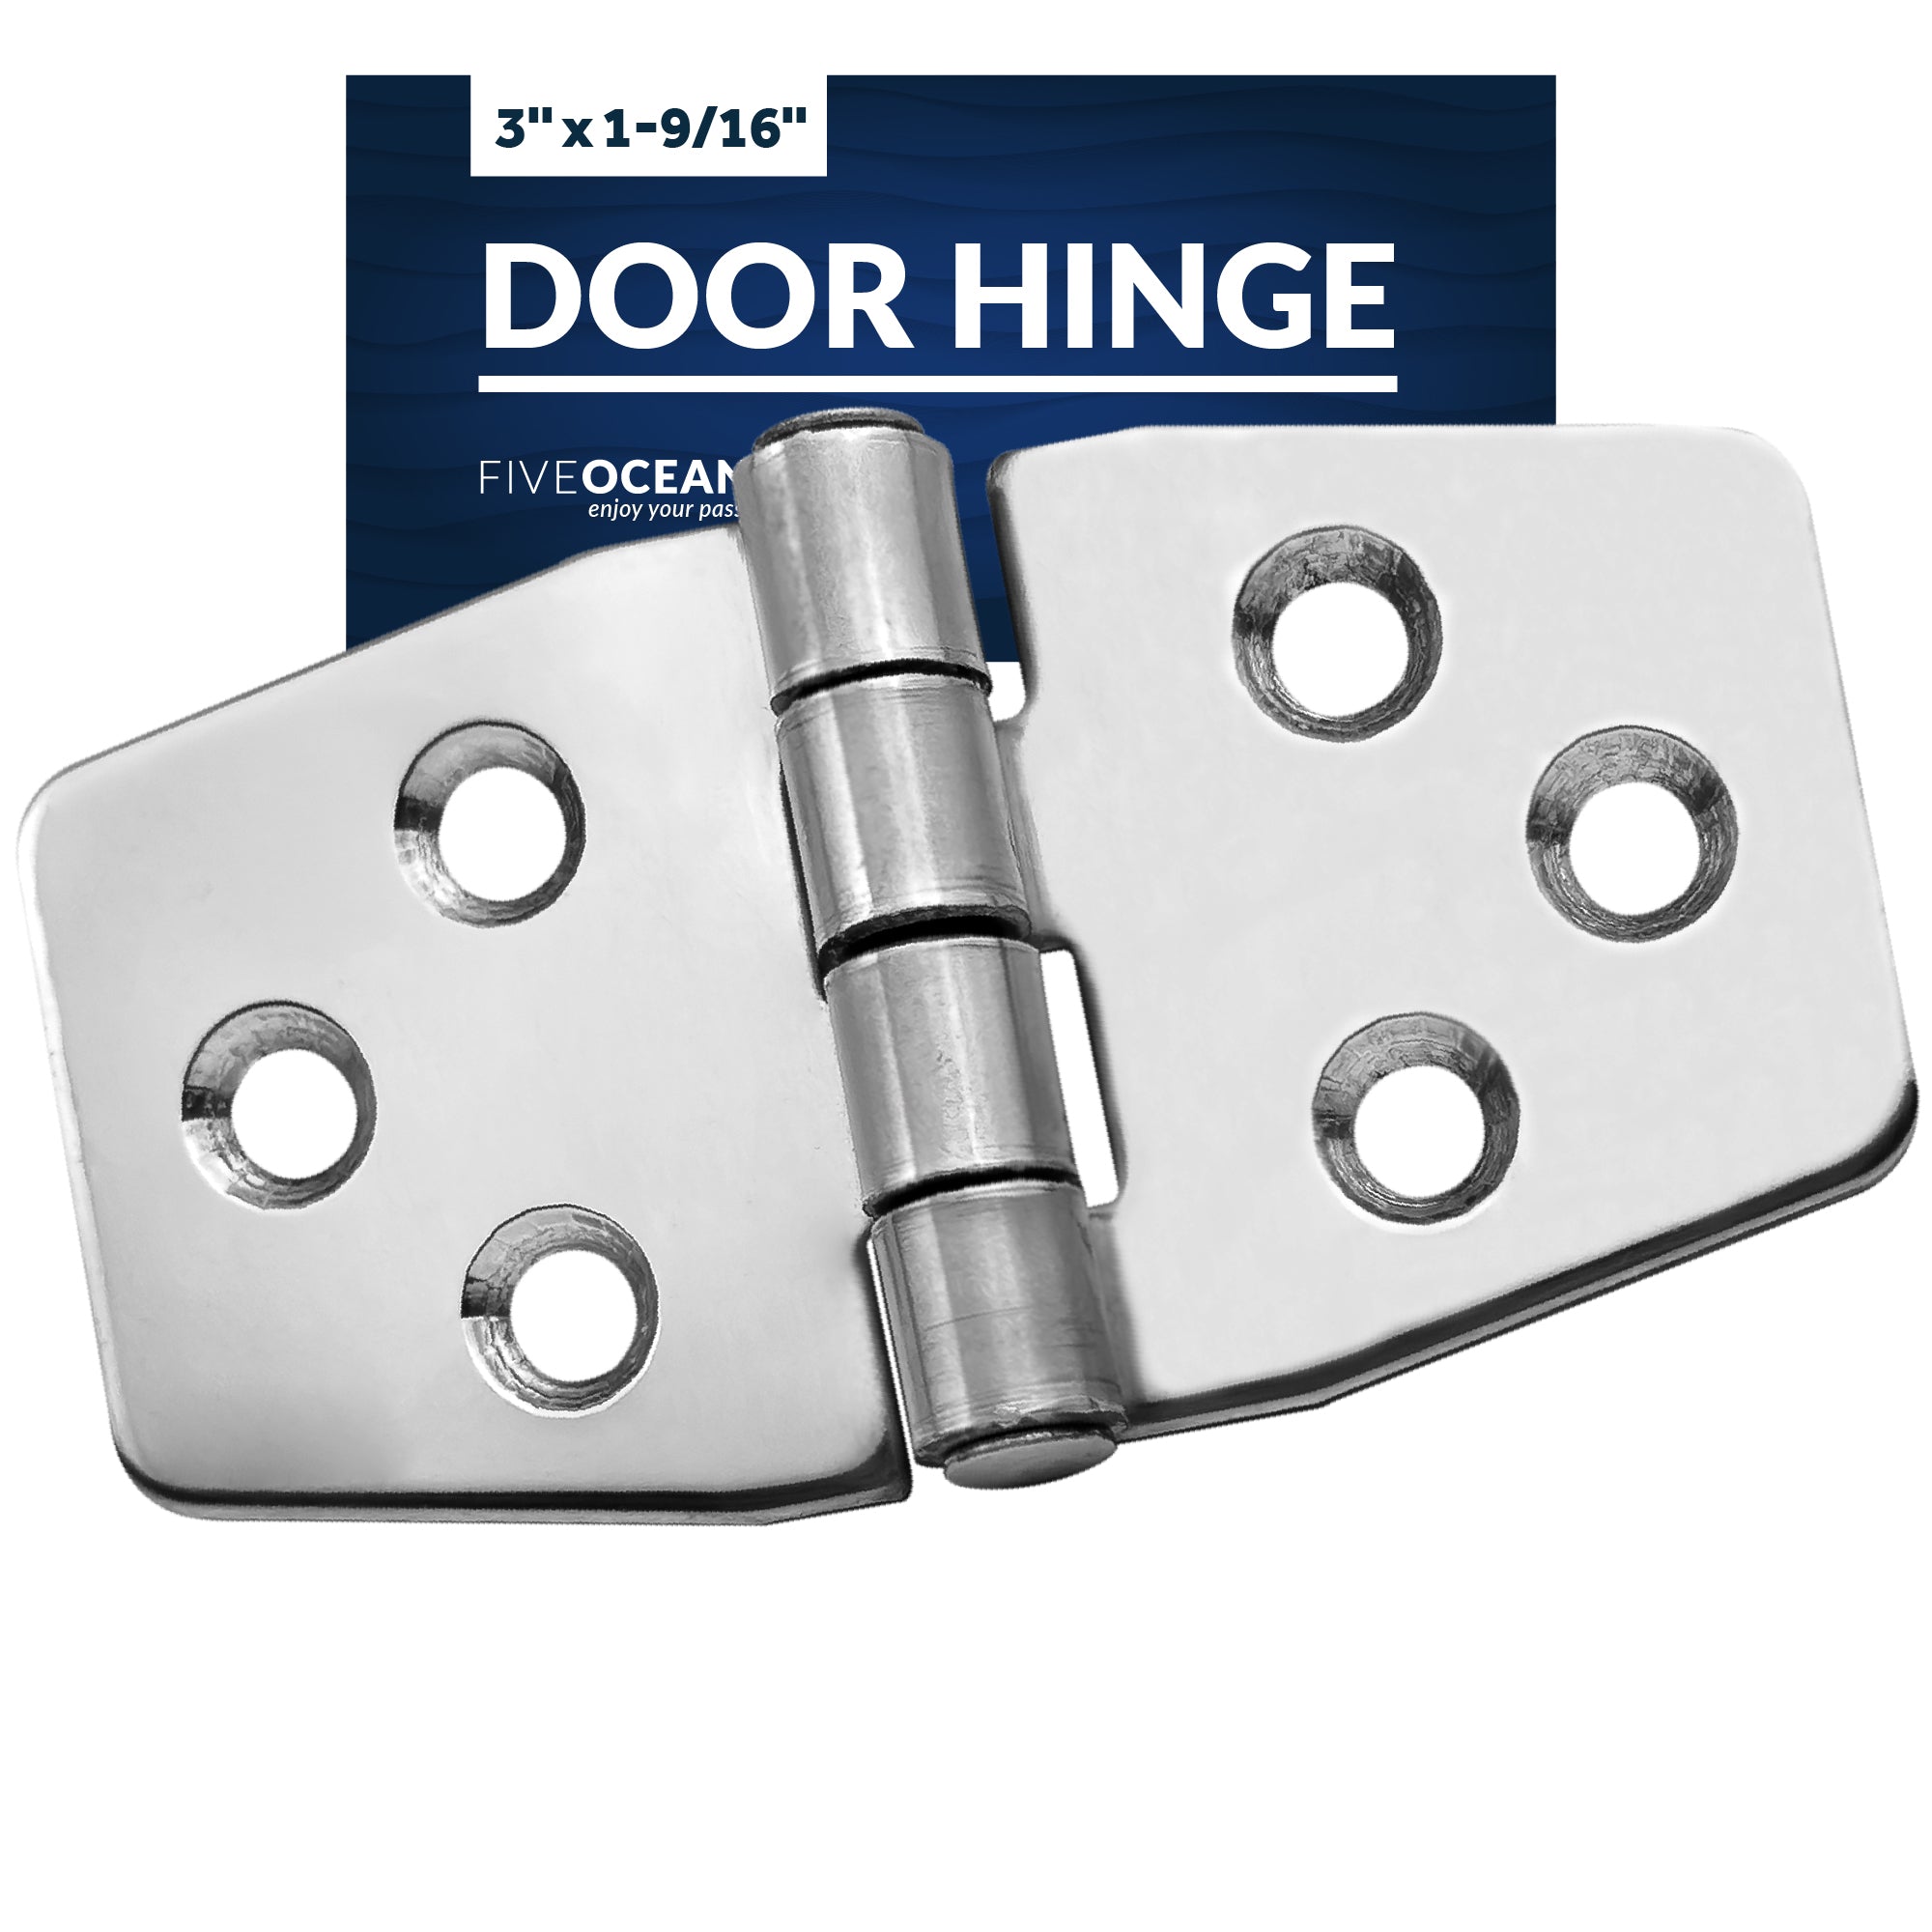 Door Hinge, 3" x 1-9/16", Stainless Steel - FO628